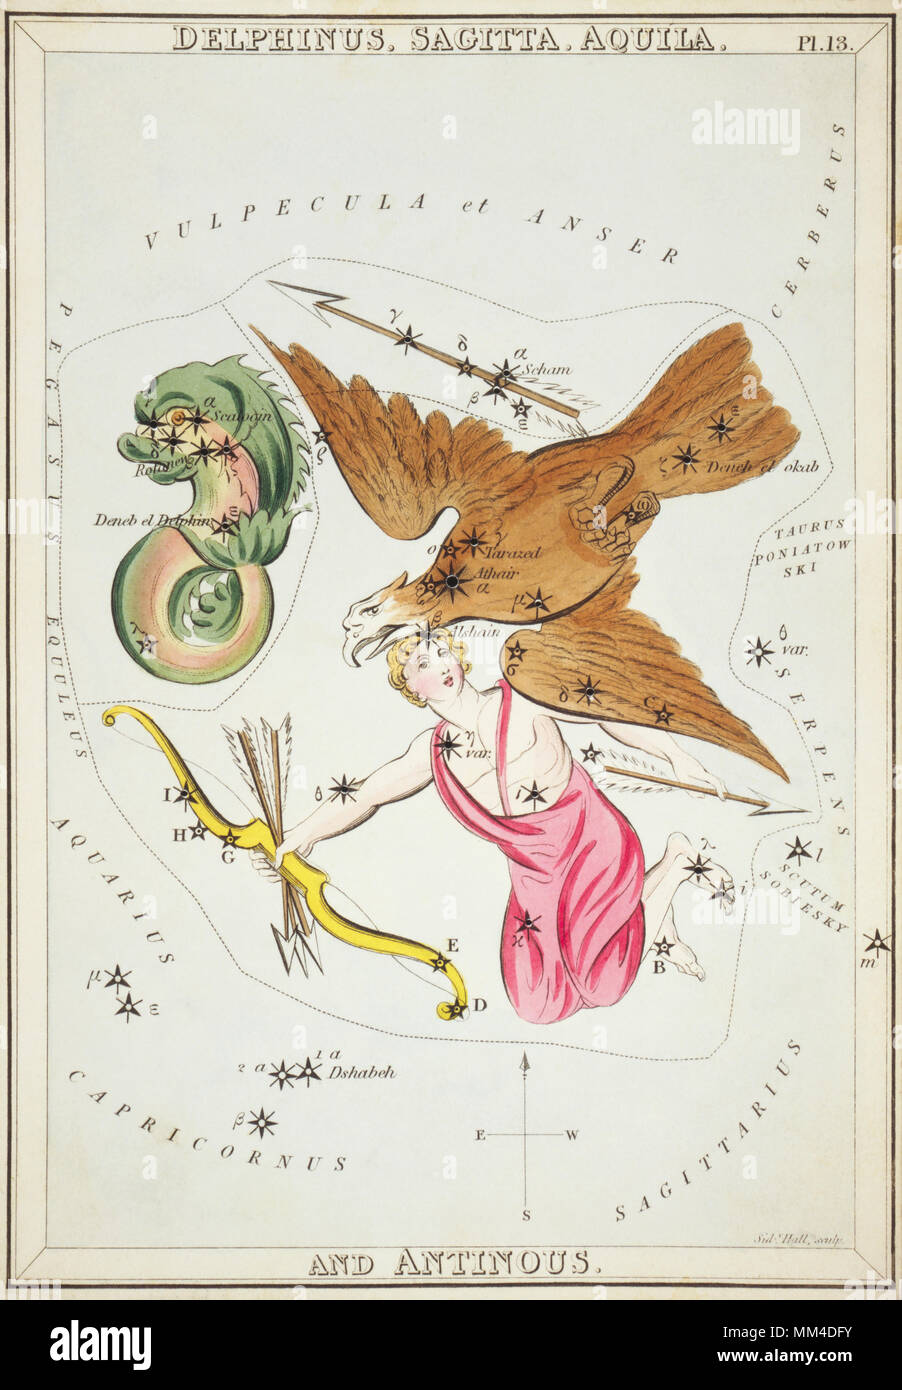 Delphinus, Sagitta, Aquila und Antinous. Karte Nummer 13 von Urania's Mirror, oder einen Blick auf den Himmel, eines der 32 astronomischen Star Chart Karten von Sidney Hall graviert und publshed 1824. Stockfoto